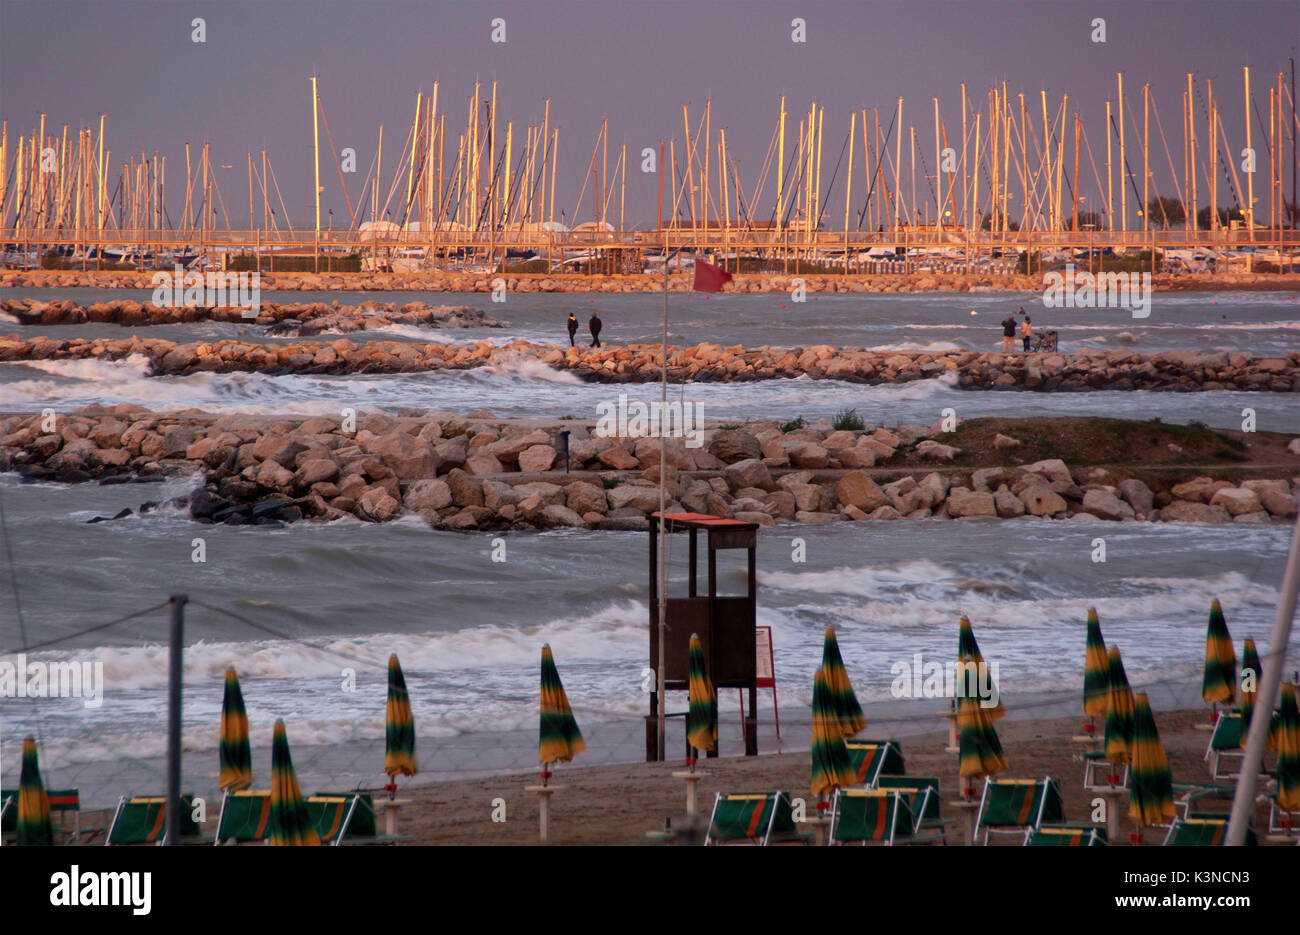 Den Sonnenuntergang auf der Rimini Strand Lichter die raue See und die kleinen touristischen Hafen mit angelegten segeln Boote auf die Docks von Steinen. Emilia Romagna, Italien Stockfoto